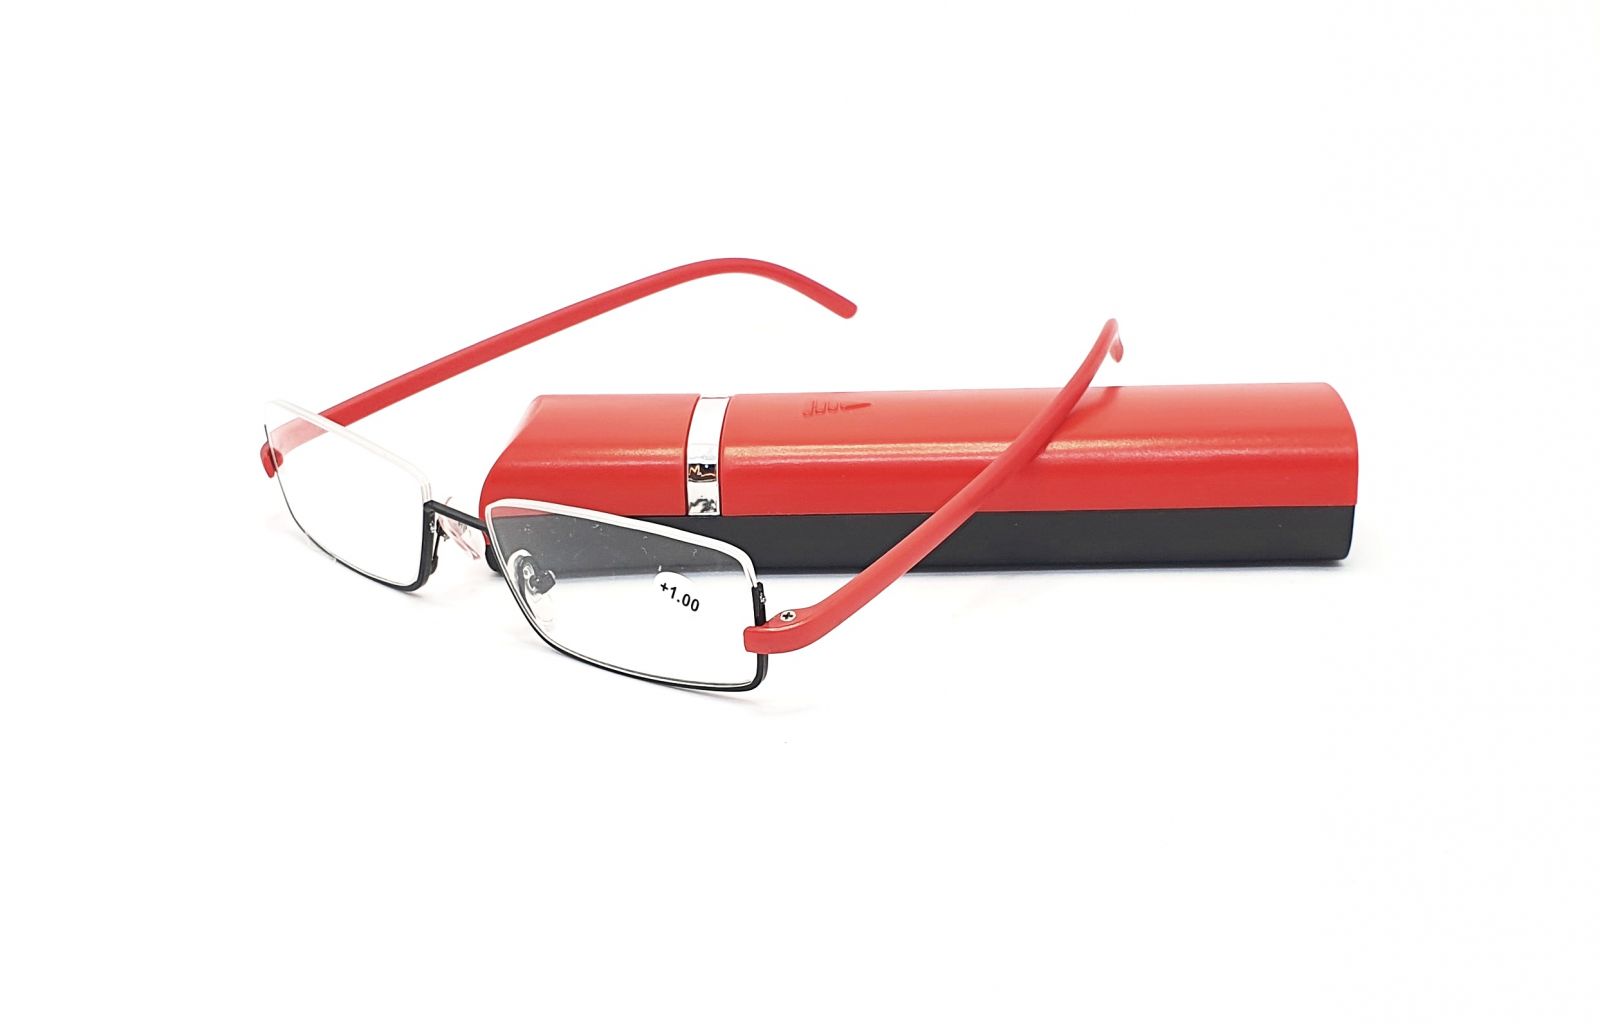 Dioptrické brýle v pouzdru TR810 / +2,00 červené